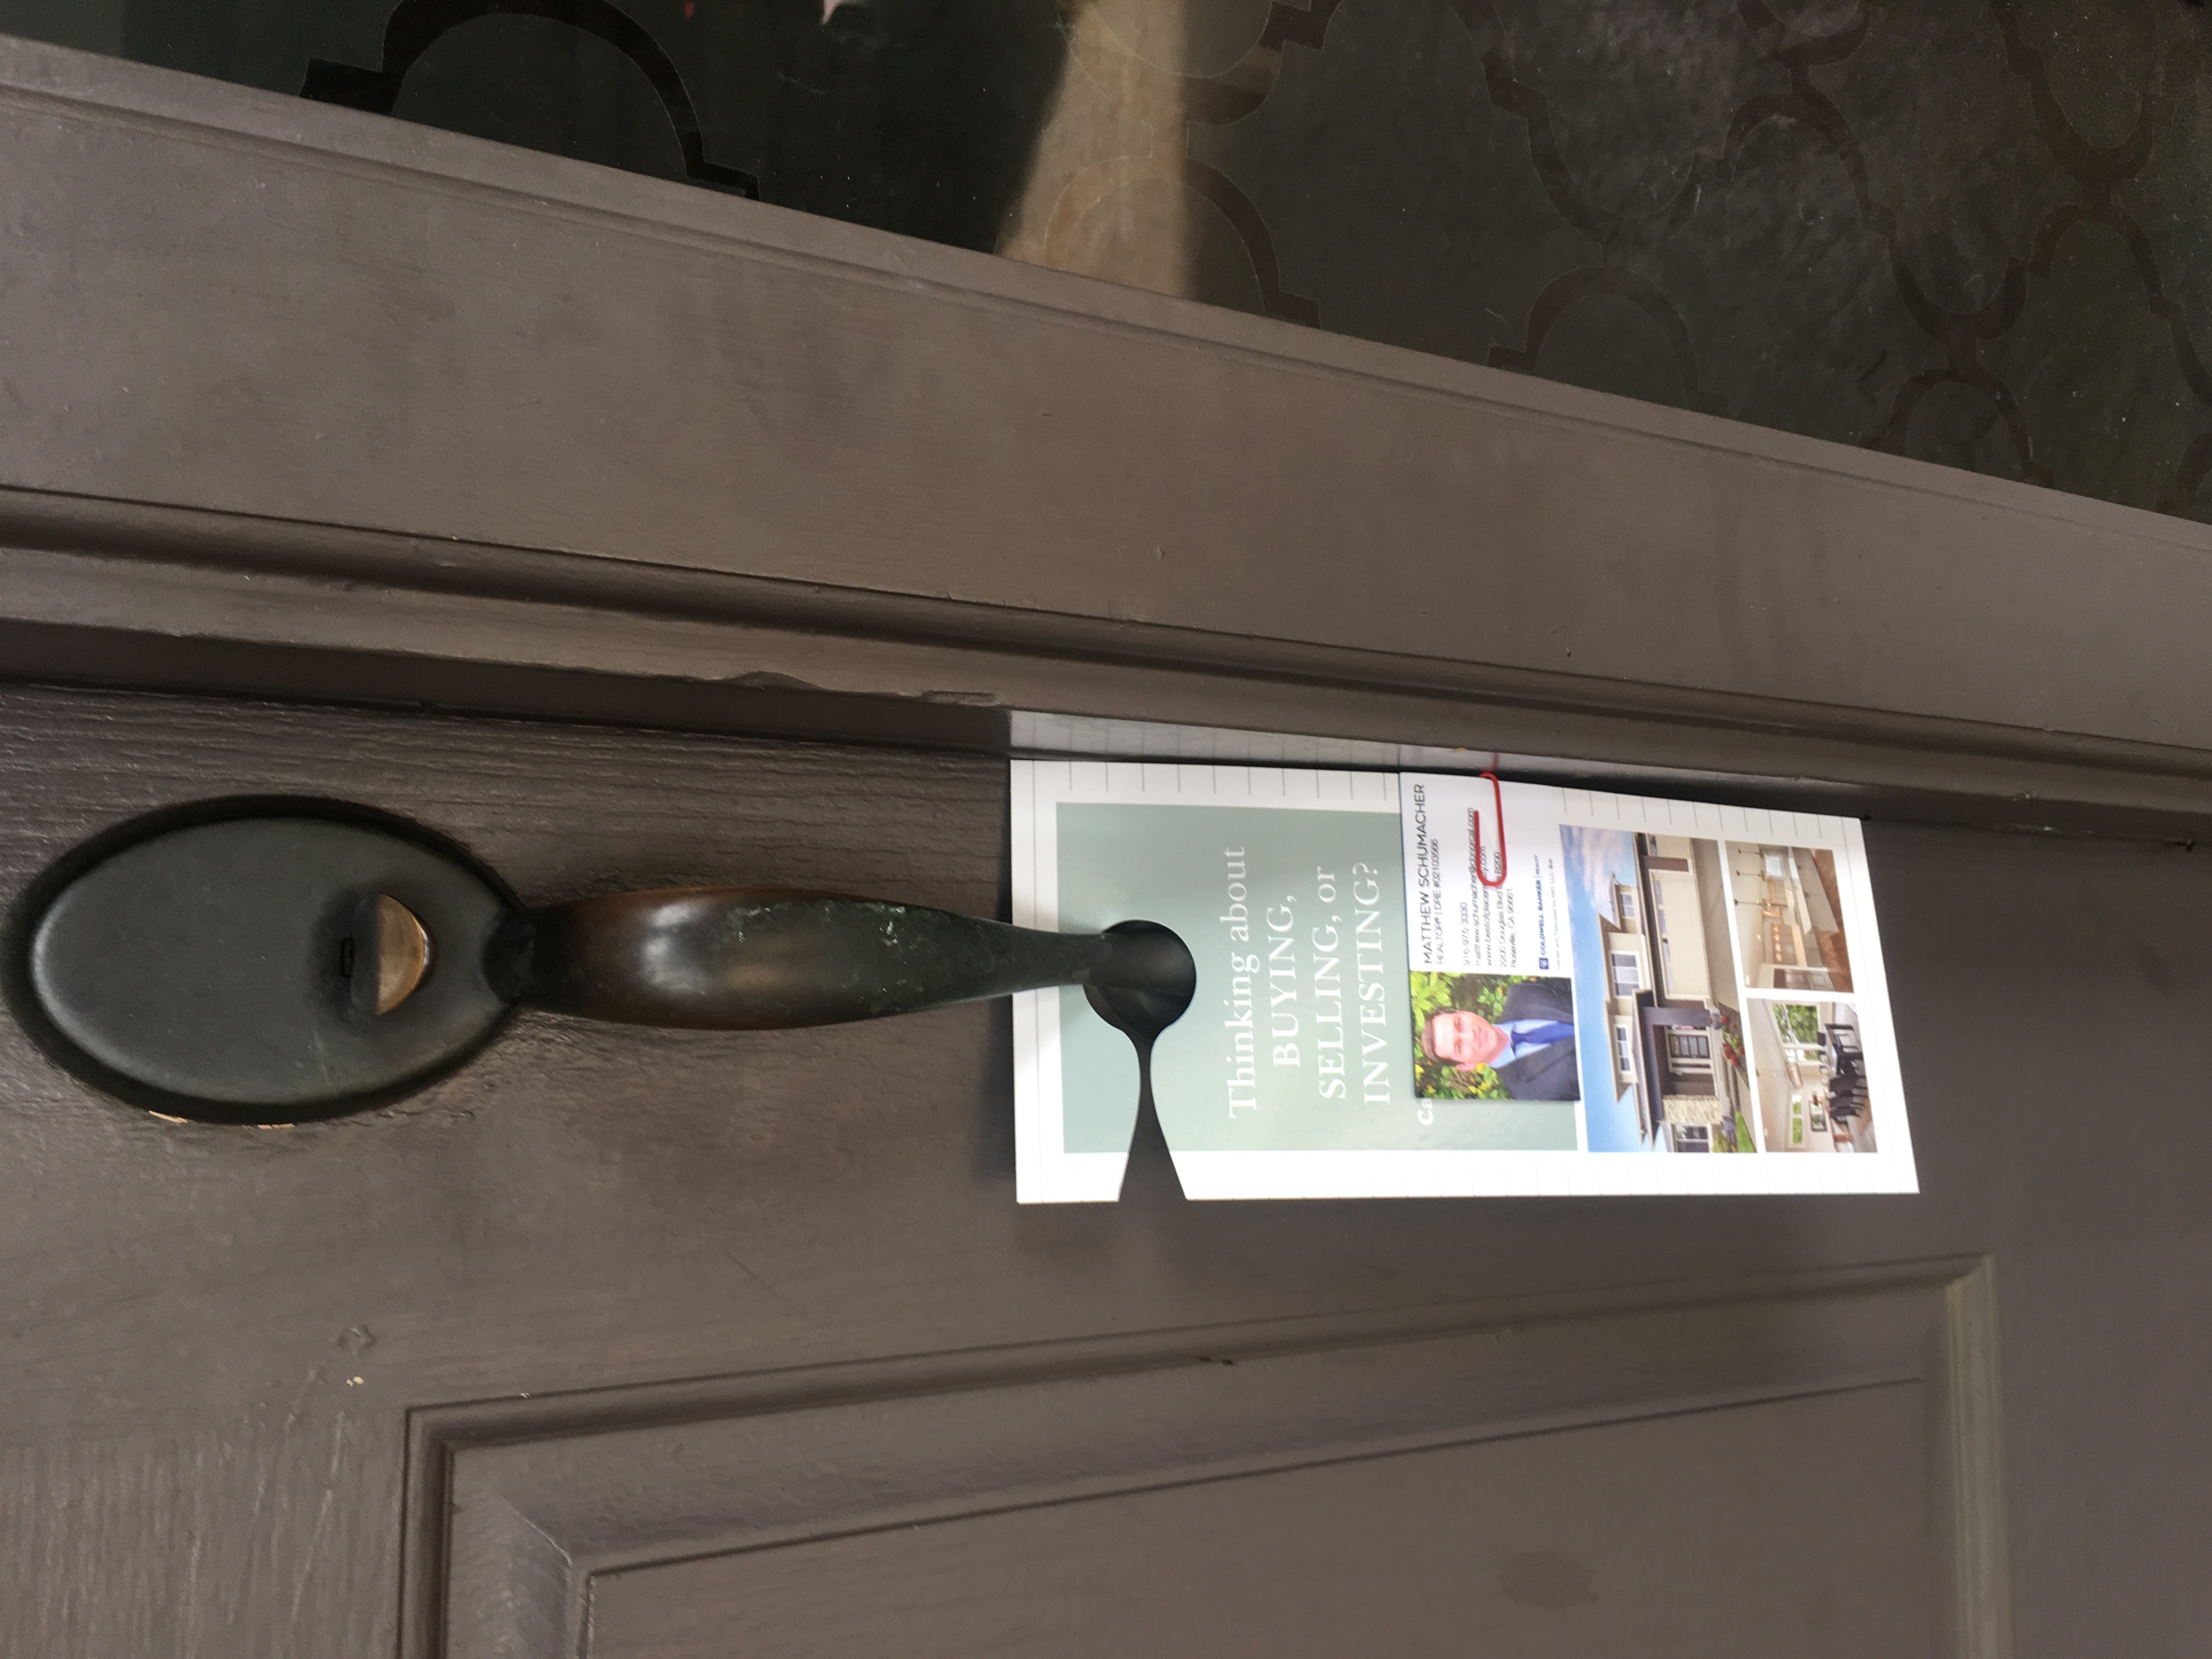 Real Estate Door hanger delivered door to door